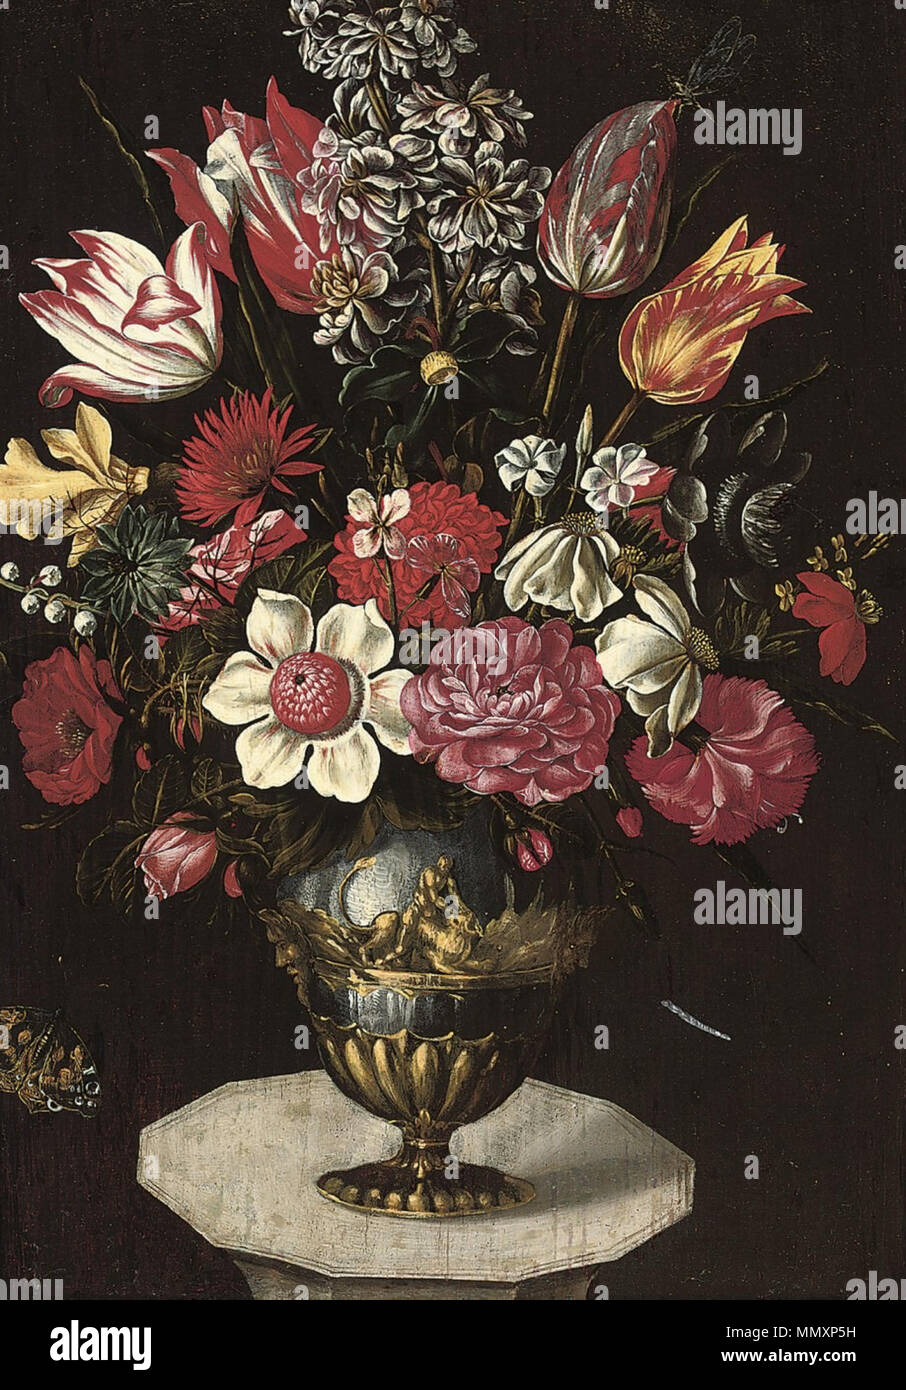 Franz Godin - Ein Strauß mit Chrysanthemen, Rosen, Anemonen etc Stock Photo